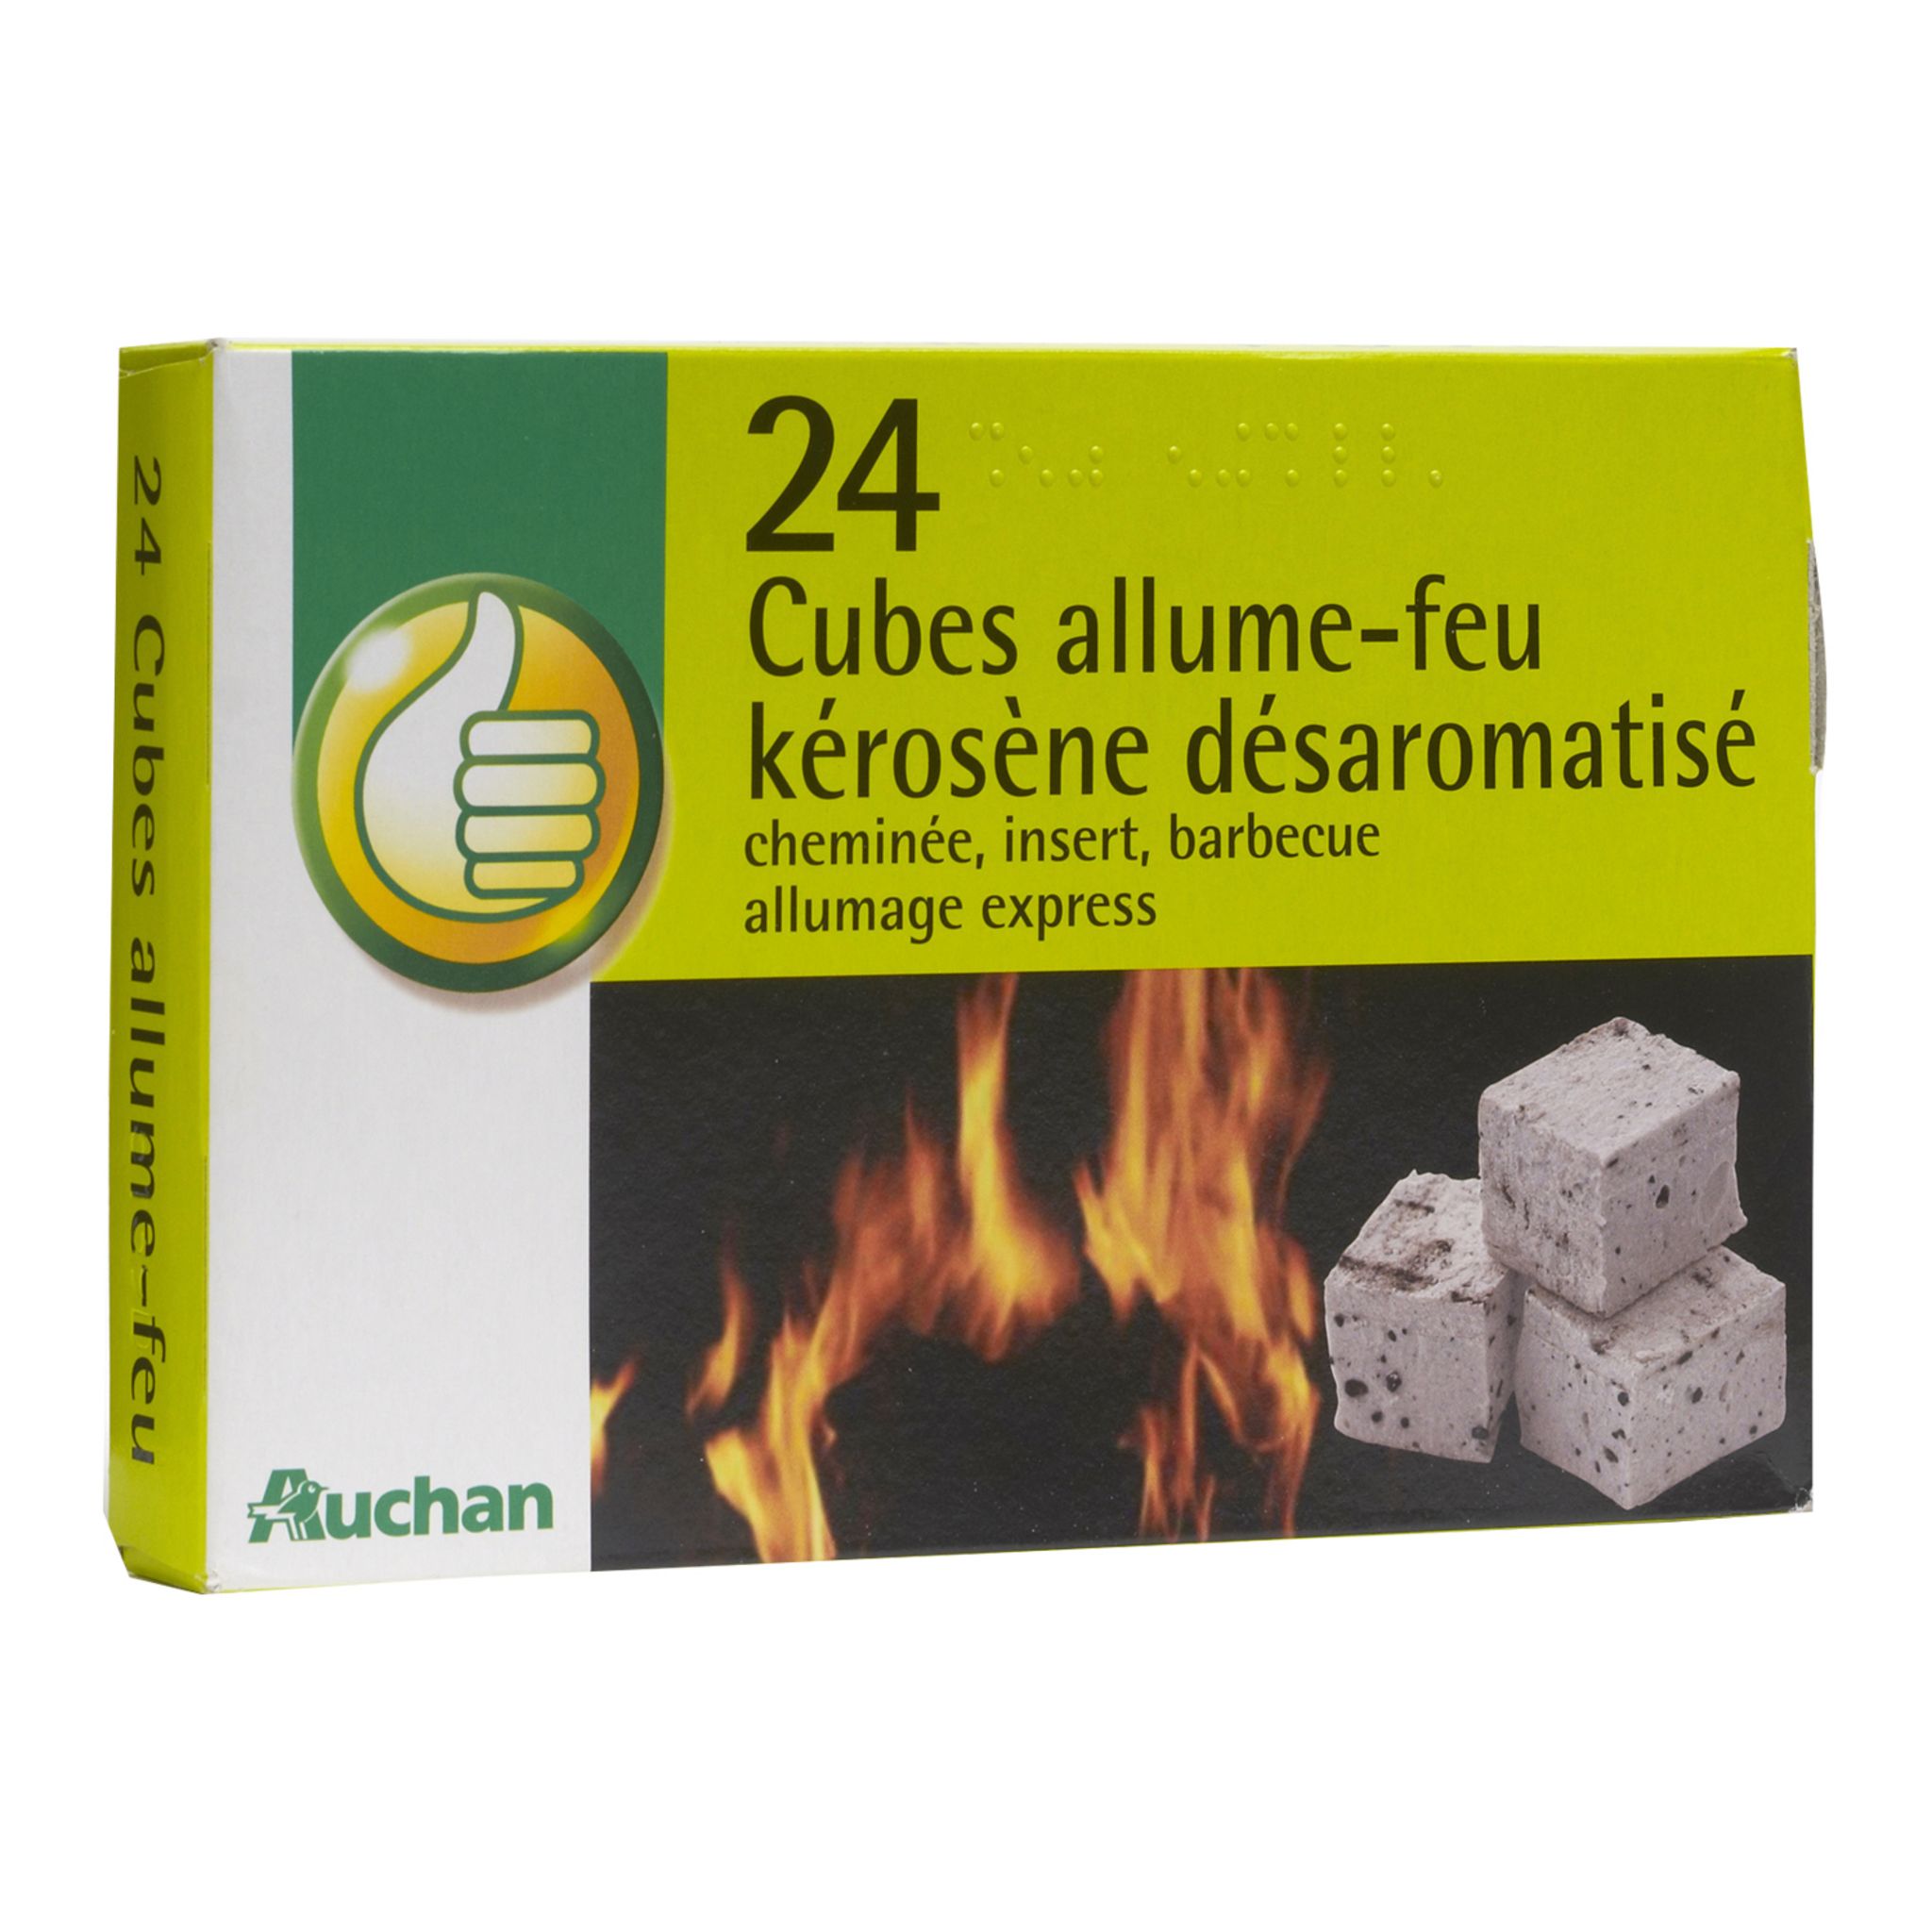 POUCE Allume-feu en cubes au kérosène désaromatisé 24 cubes pas